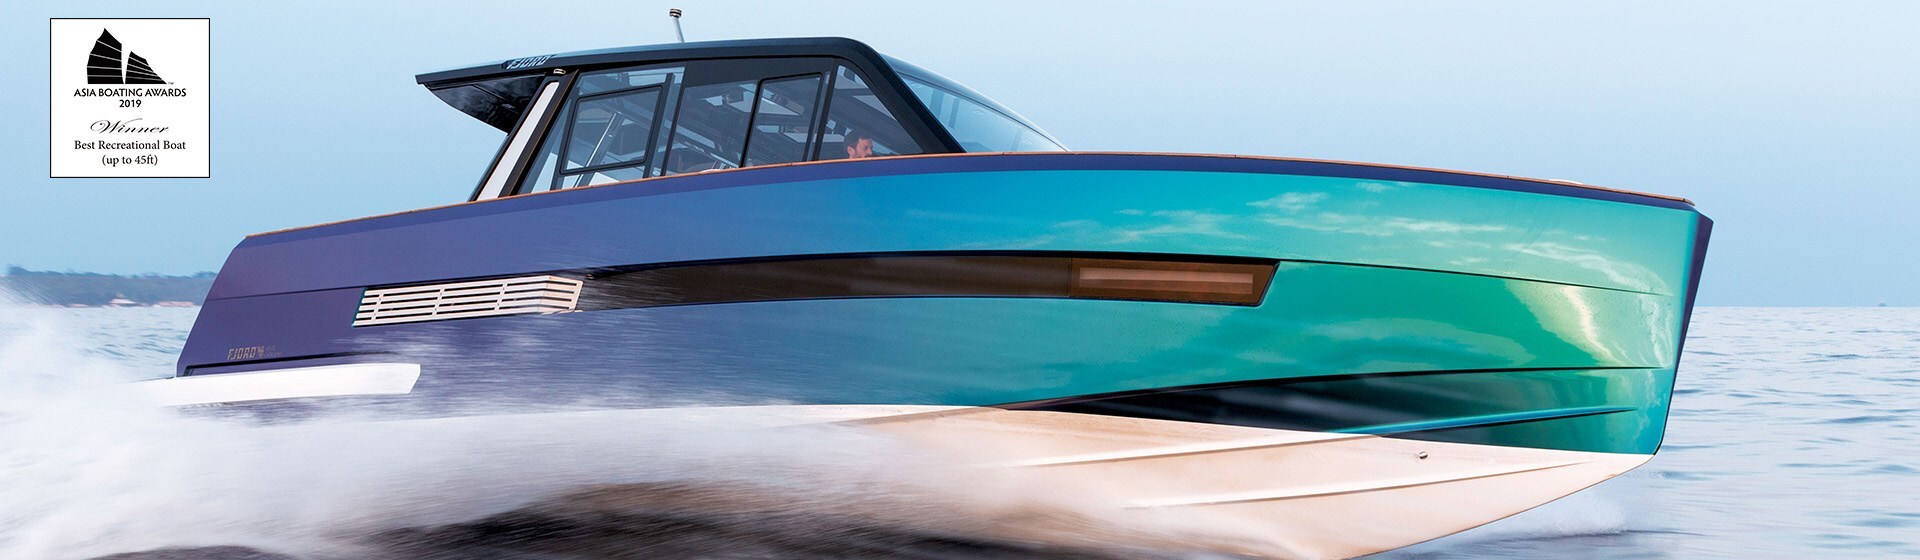 Güverte kabini hızlı giden görkemli renkli yüksek performanslı motorlu tekne